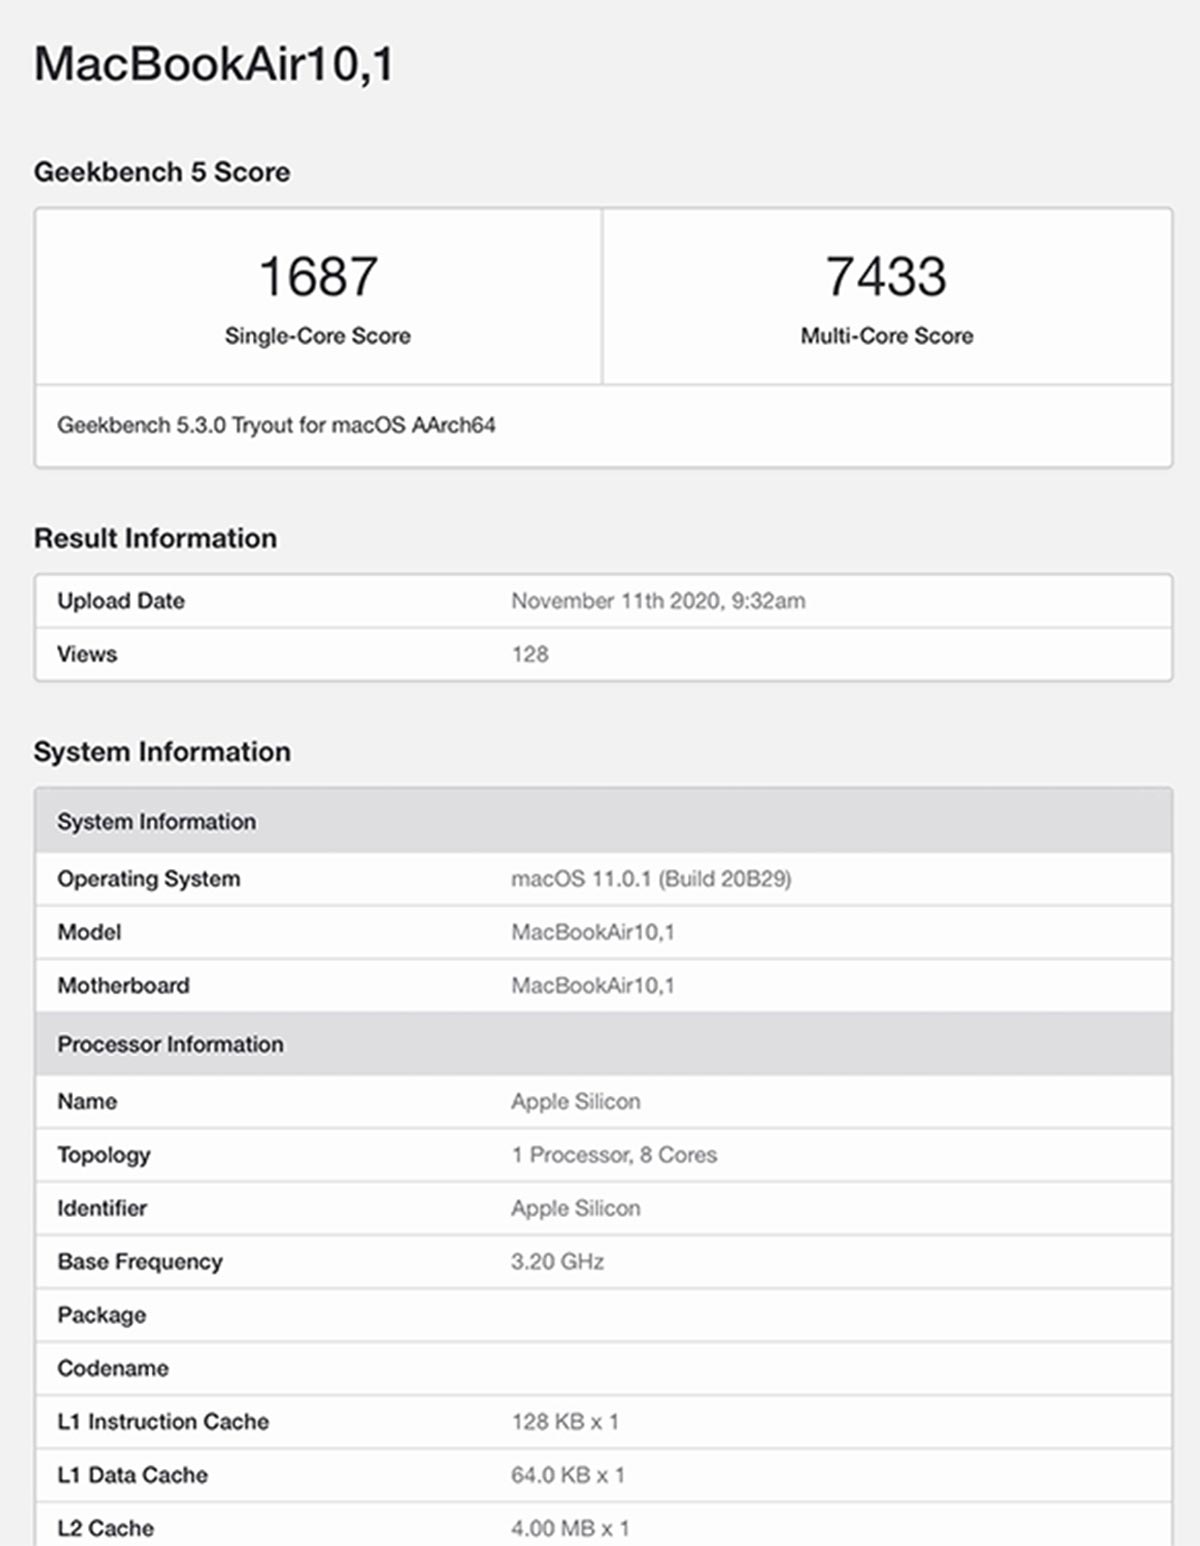 Chip Apple M1 trên
MacBook Air giá 999 USD đánh bại chip Core i9 trên MacBook
Pro giá 2799 USD